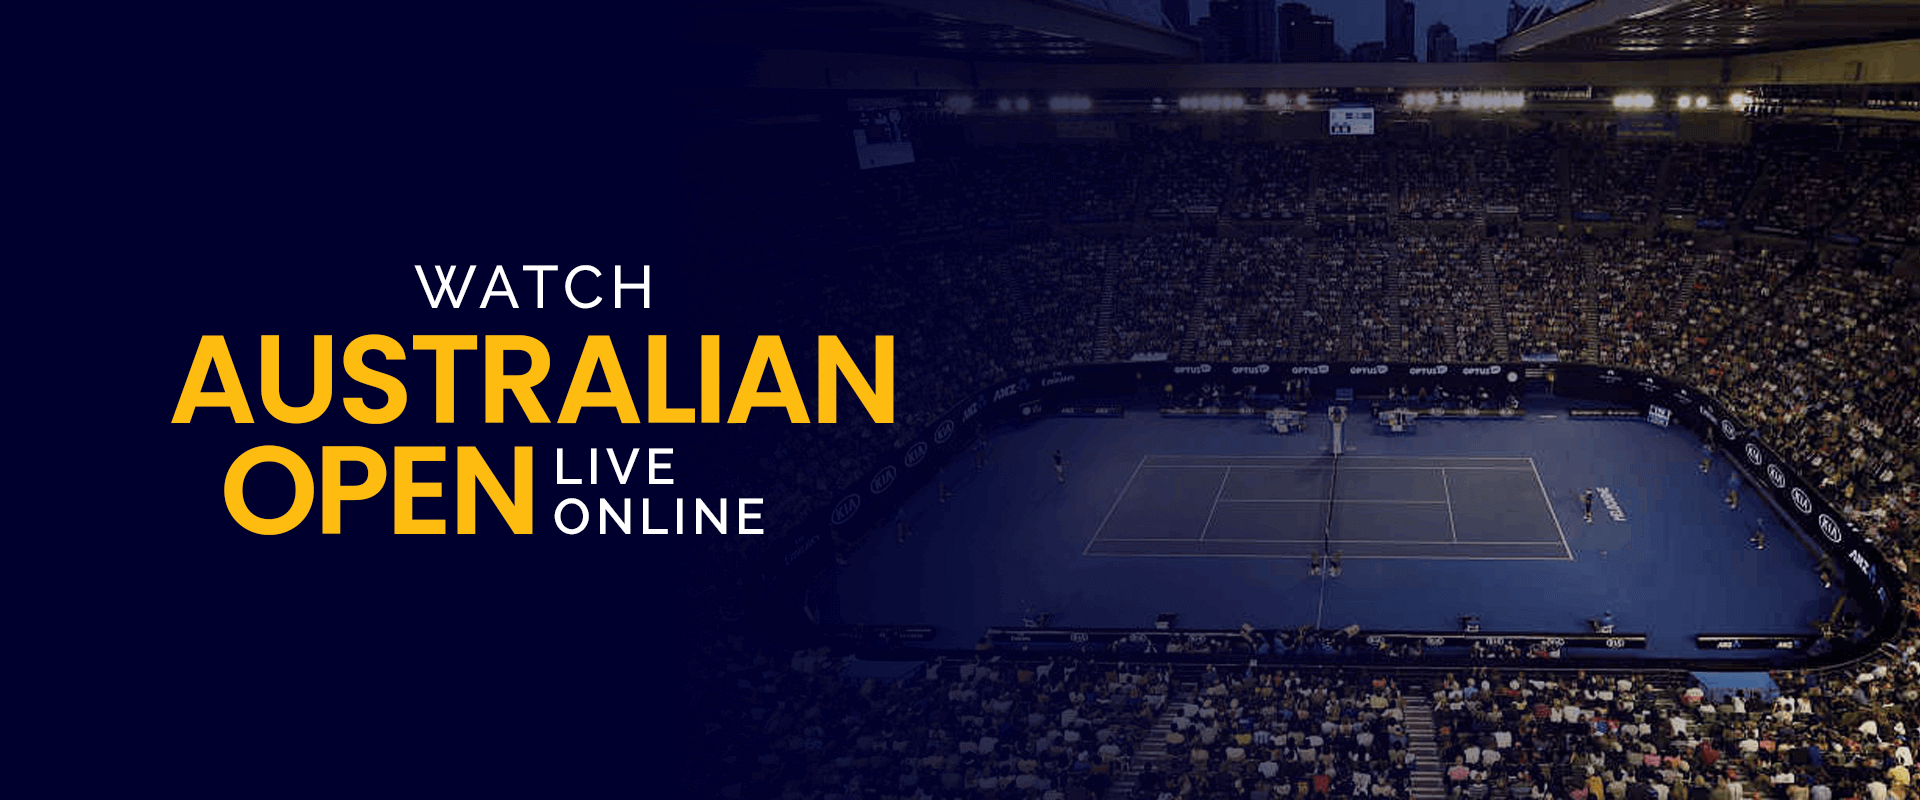 tennis australian open free streaming